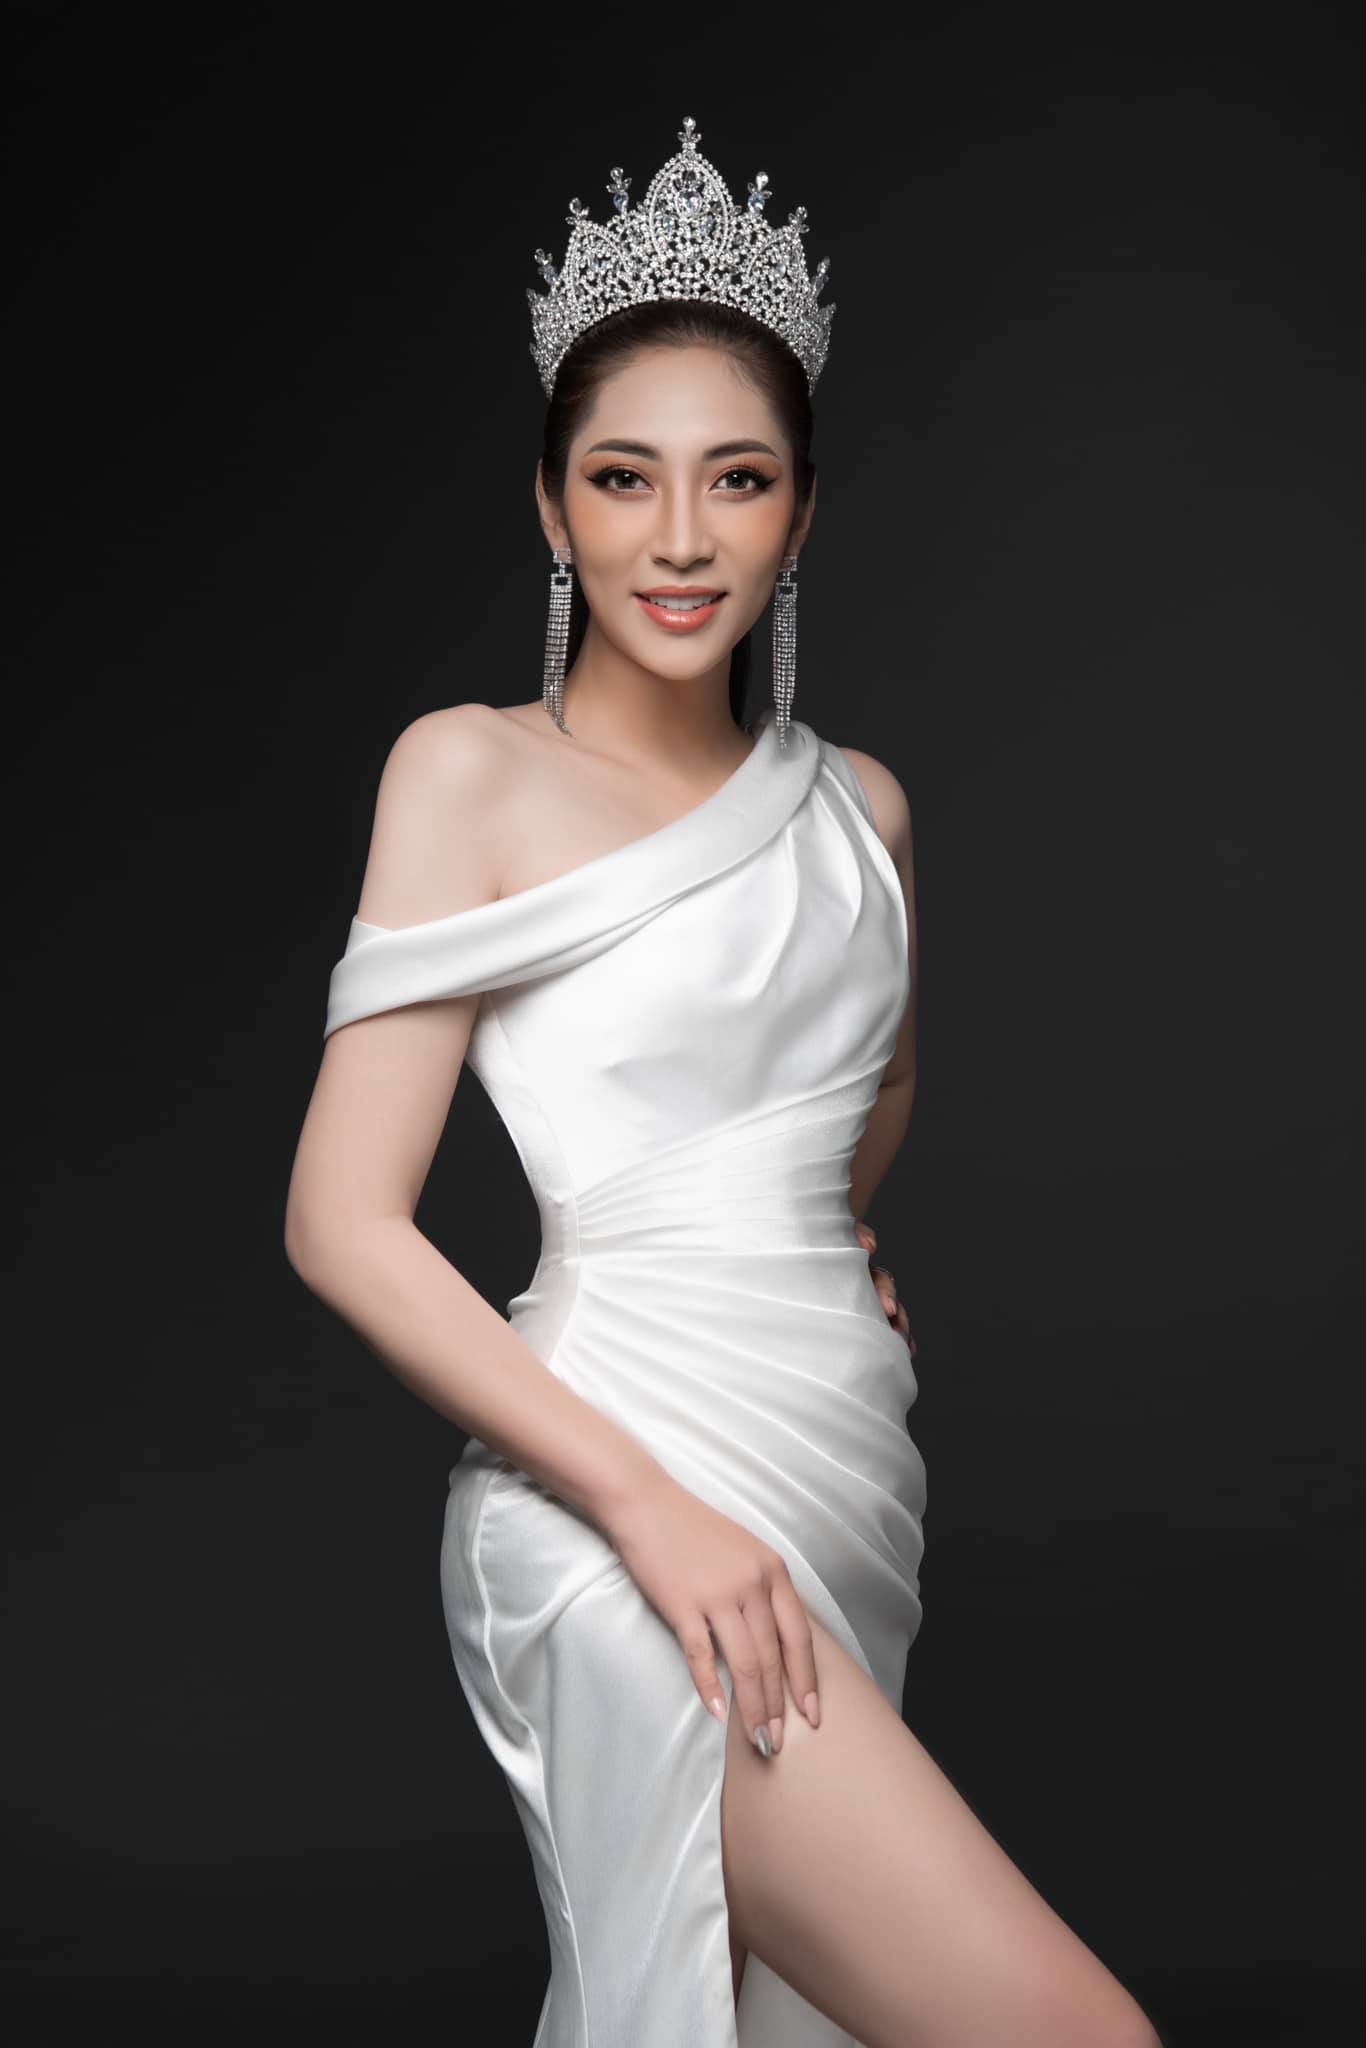 Hoa hậu cùng tên Đặng Thu Thảo: Người sung sướng bên chồng giàu kẻ ly hôn trong nước mắt